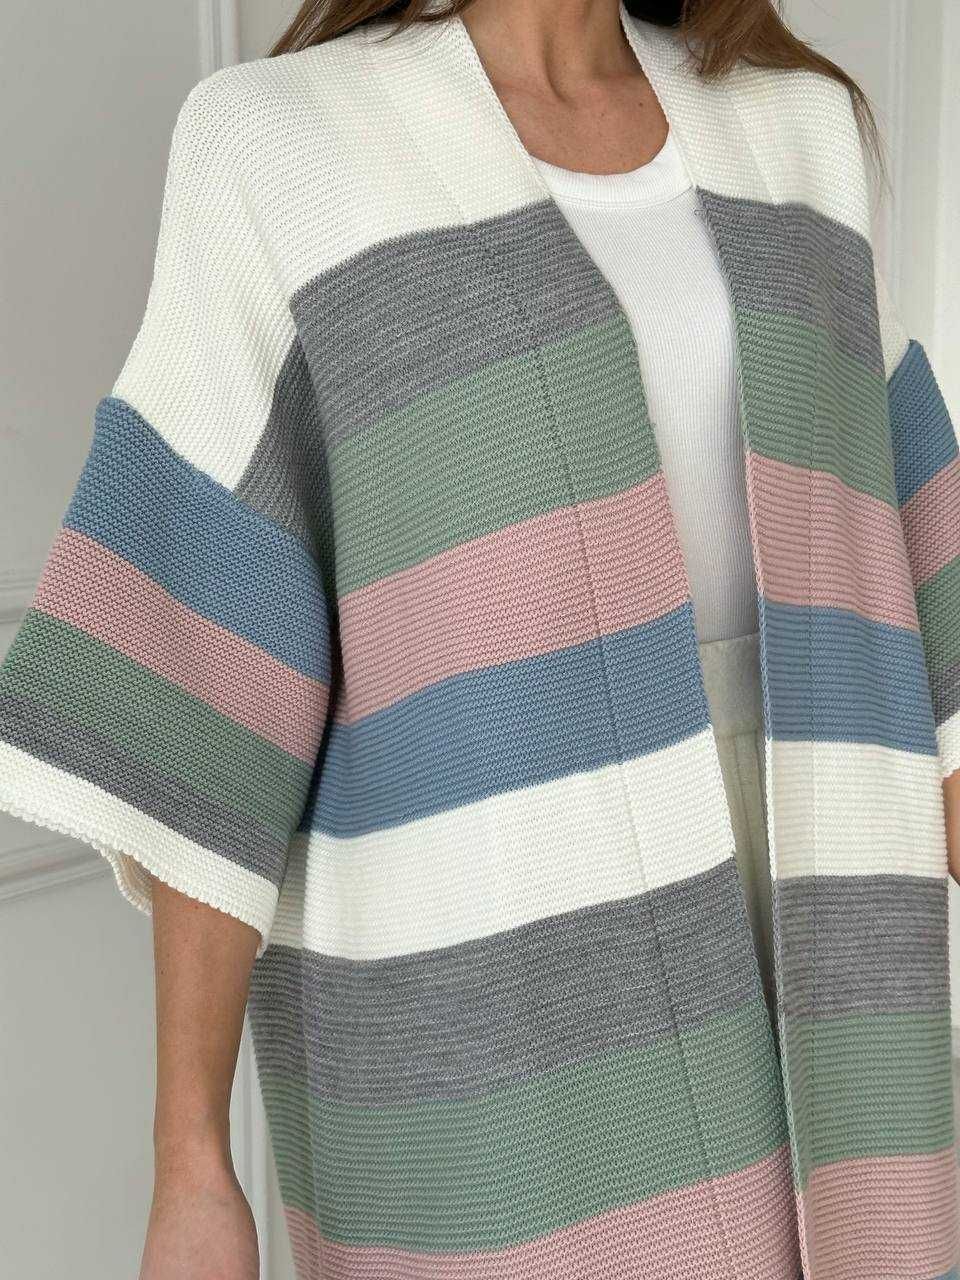 Кардиган женскиий длинный свитер пончо